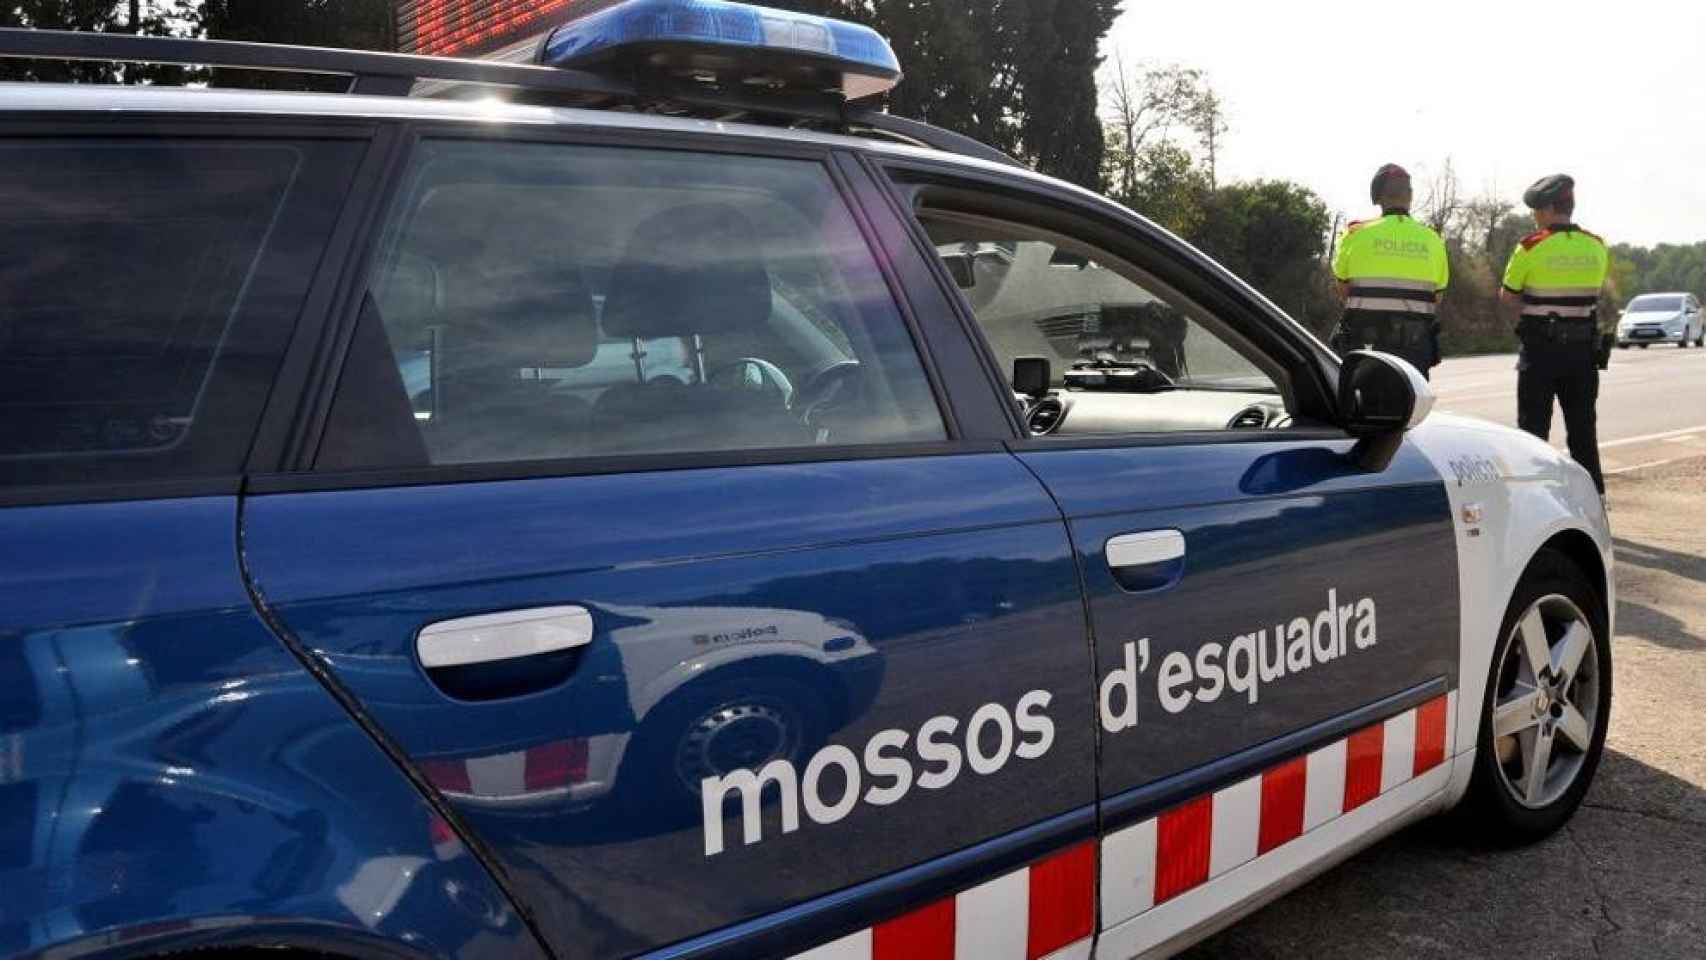 Vehículo de los Mossos d'Esquadra junto a dos agentes uniformados / Mossos